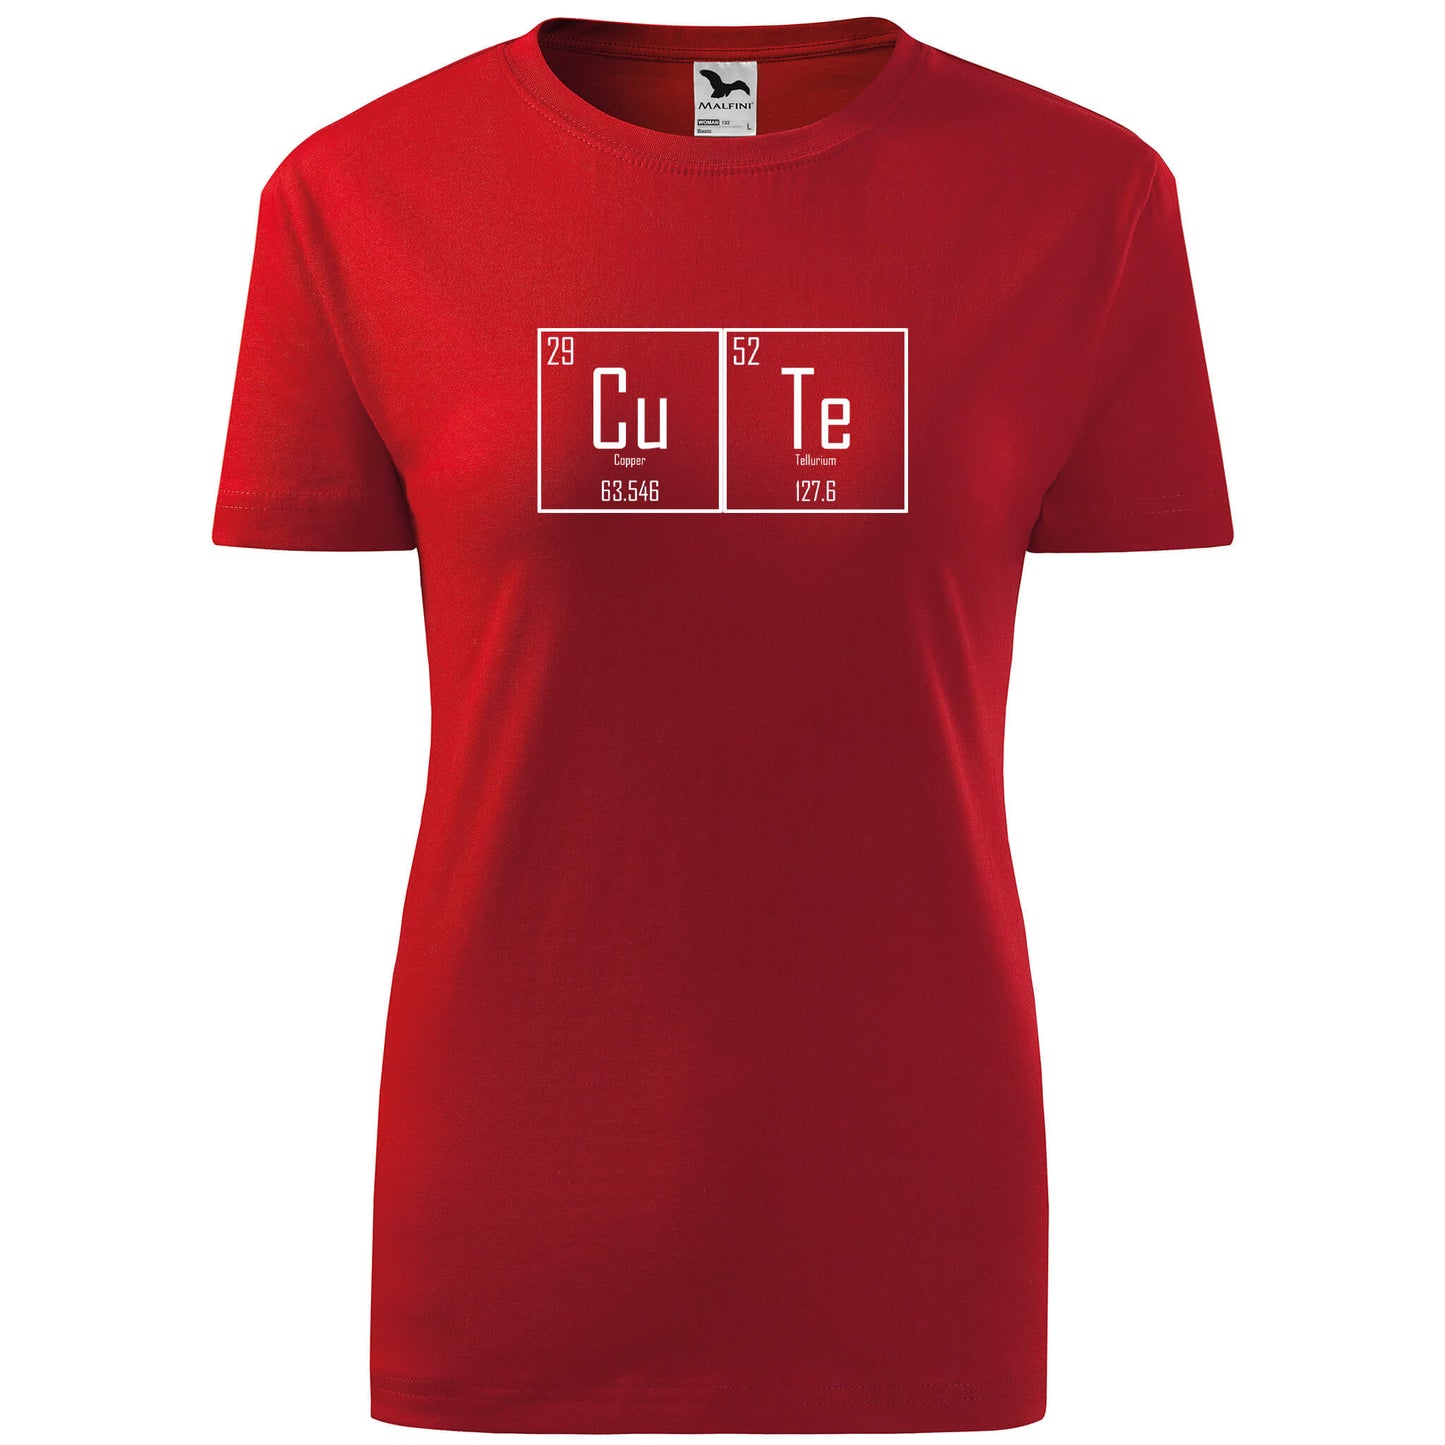 T-shirt - CuTe - rvdesignprint